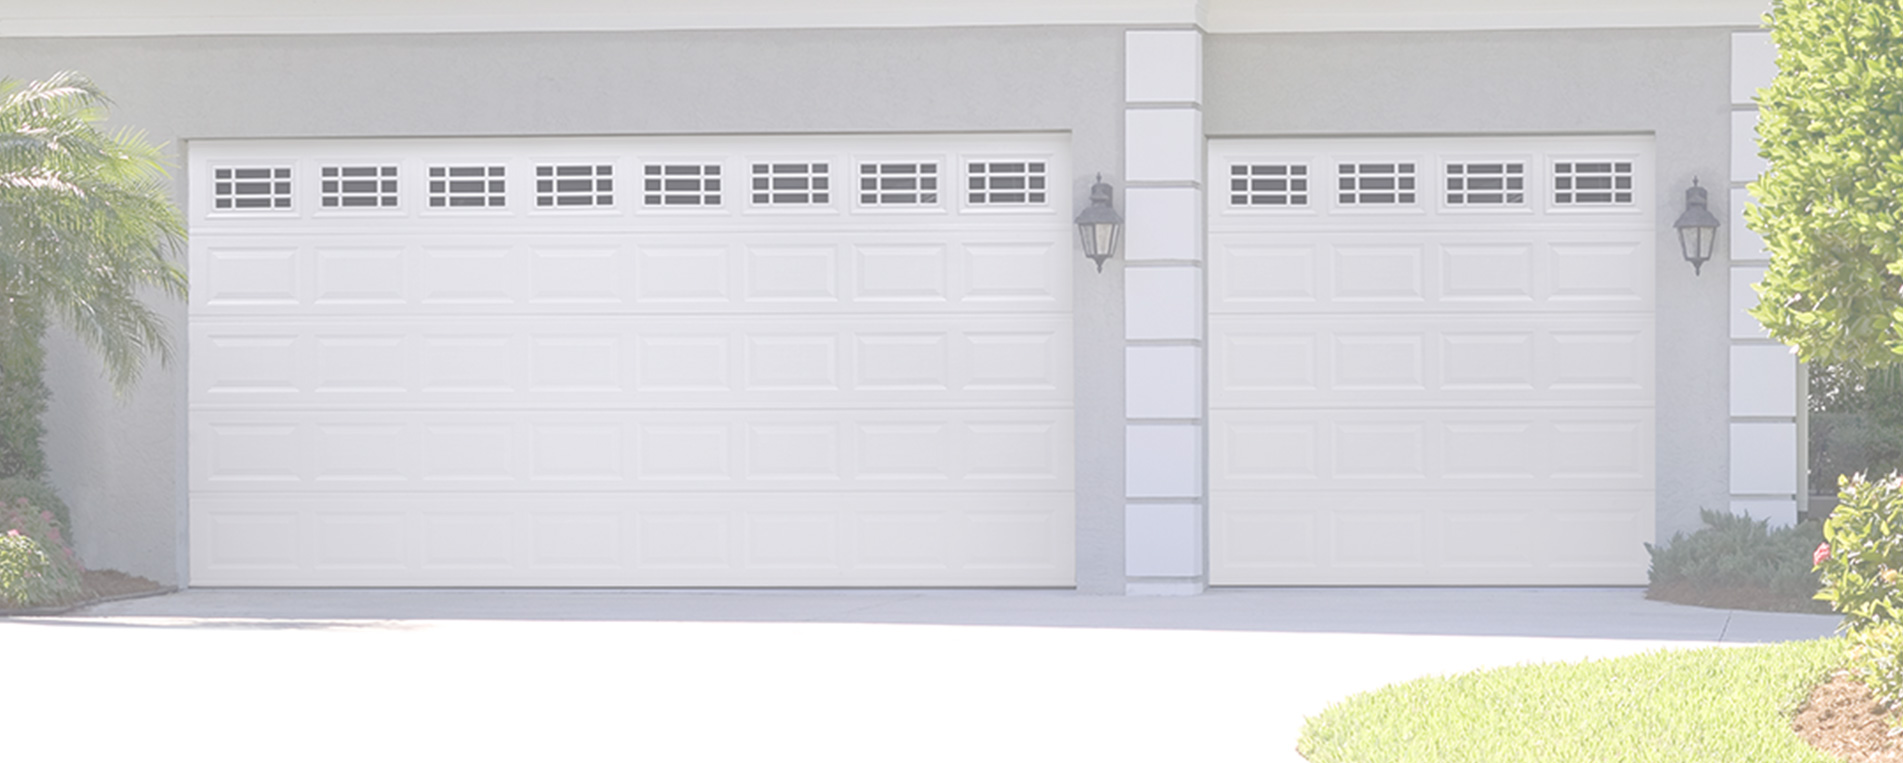 Best Irvine Repairs For Garage Doors